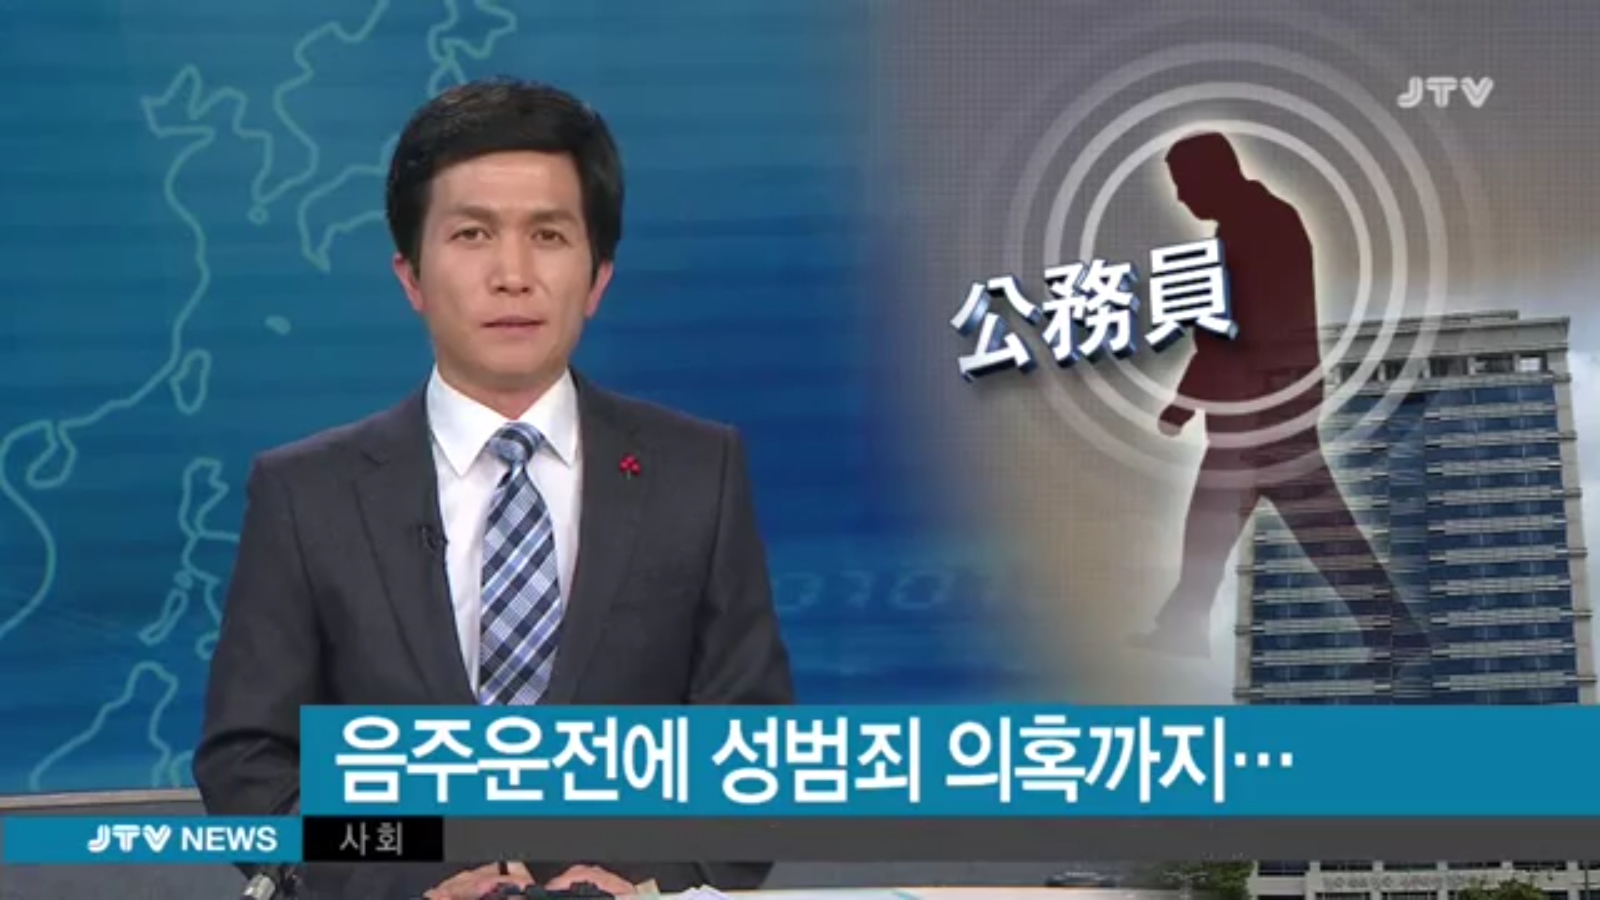 [16.12.30 JTV] 전북도 공무원, 음주운전에 성범죄 의혹까지...1.jpg